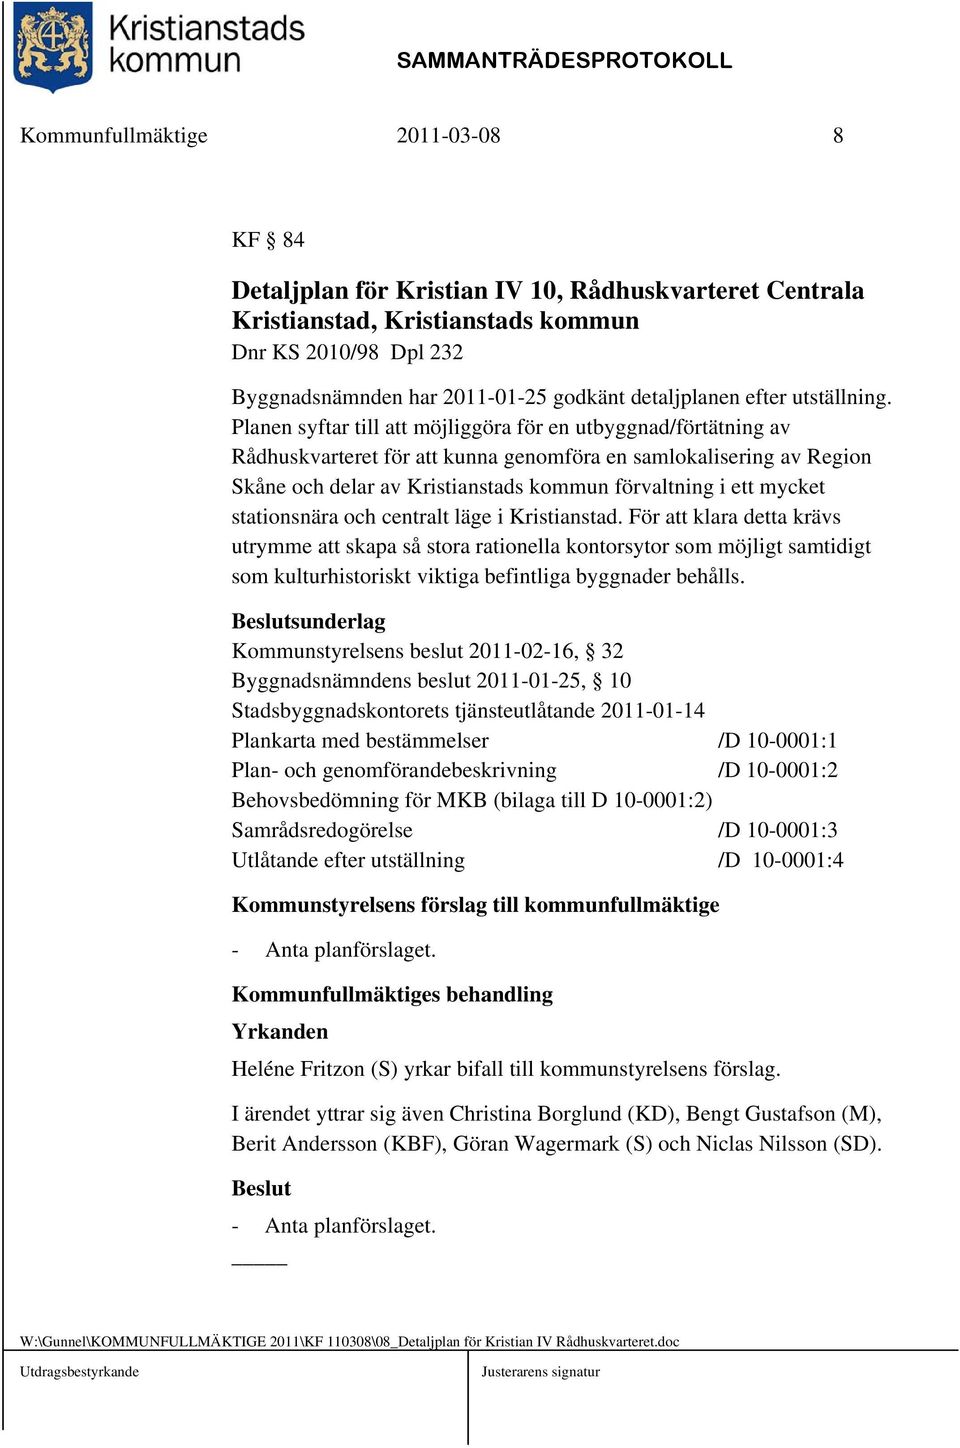 Planen syftar till att möjliggöra för en utbyggnad/förtätning av Rådhuskvarteret för att kunna genomföra en samlokalisering av Region Skåne och delar av Kristianstads kommun förvaltning i ett mycket